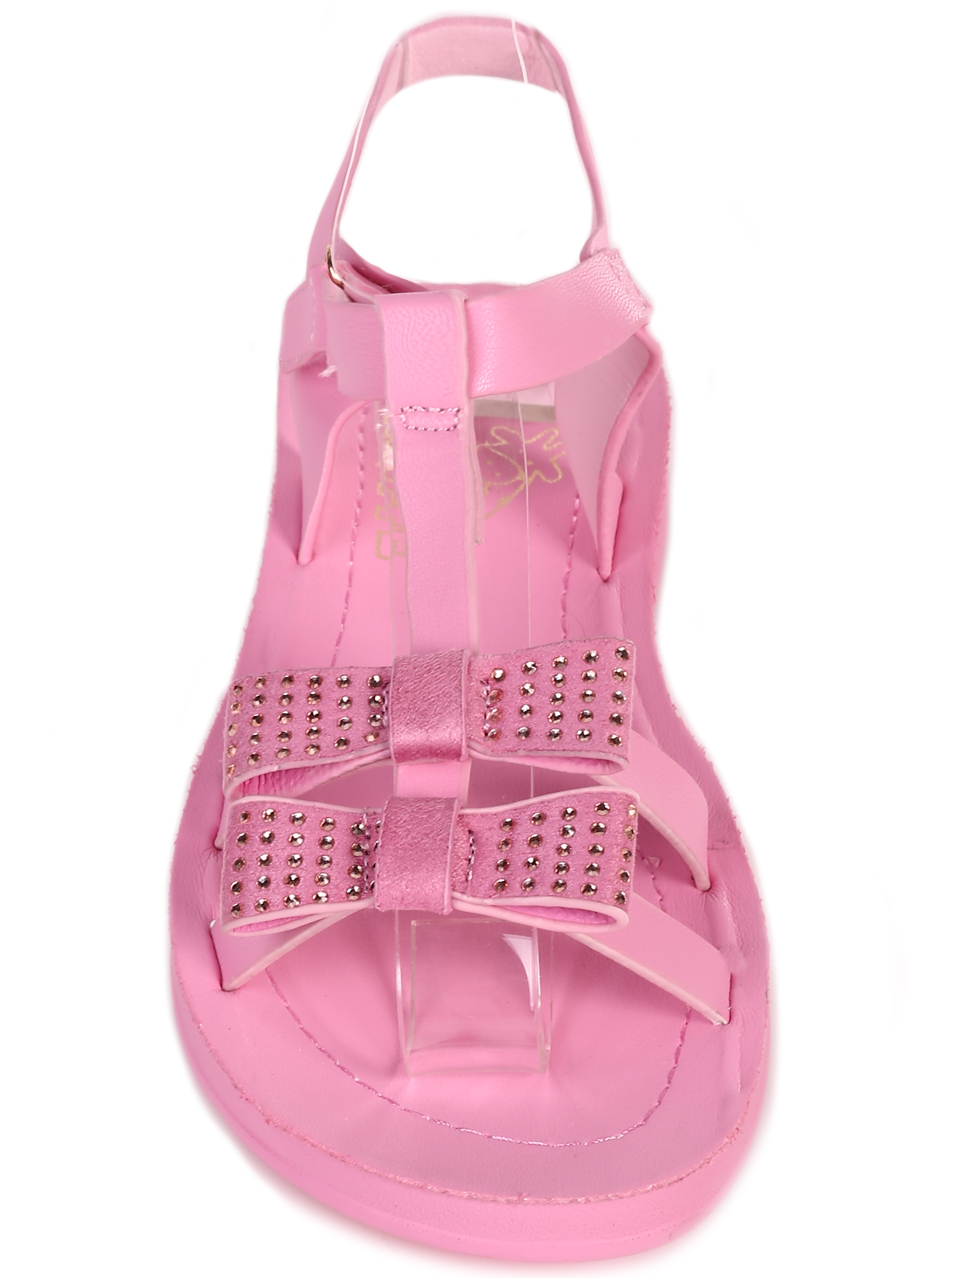 Ежедневни детски комфортни сандали в розово 17F-23239 pink